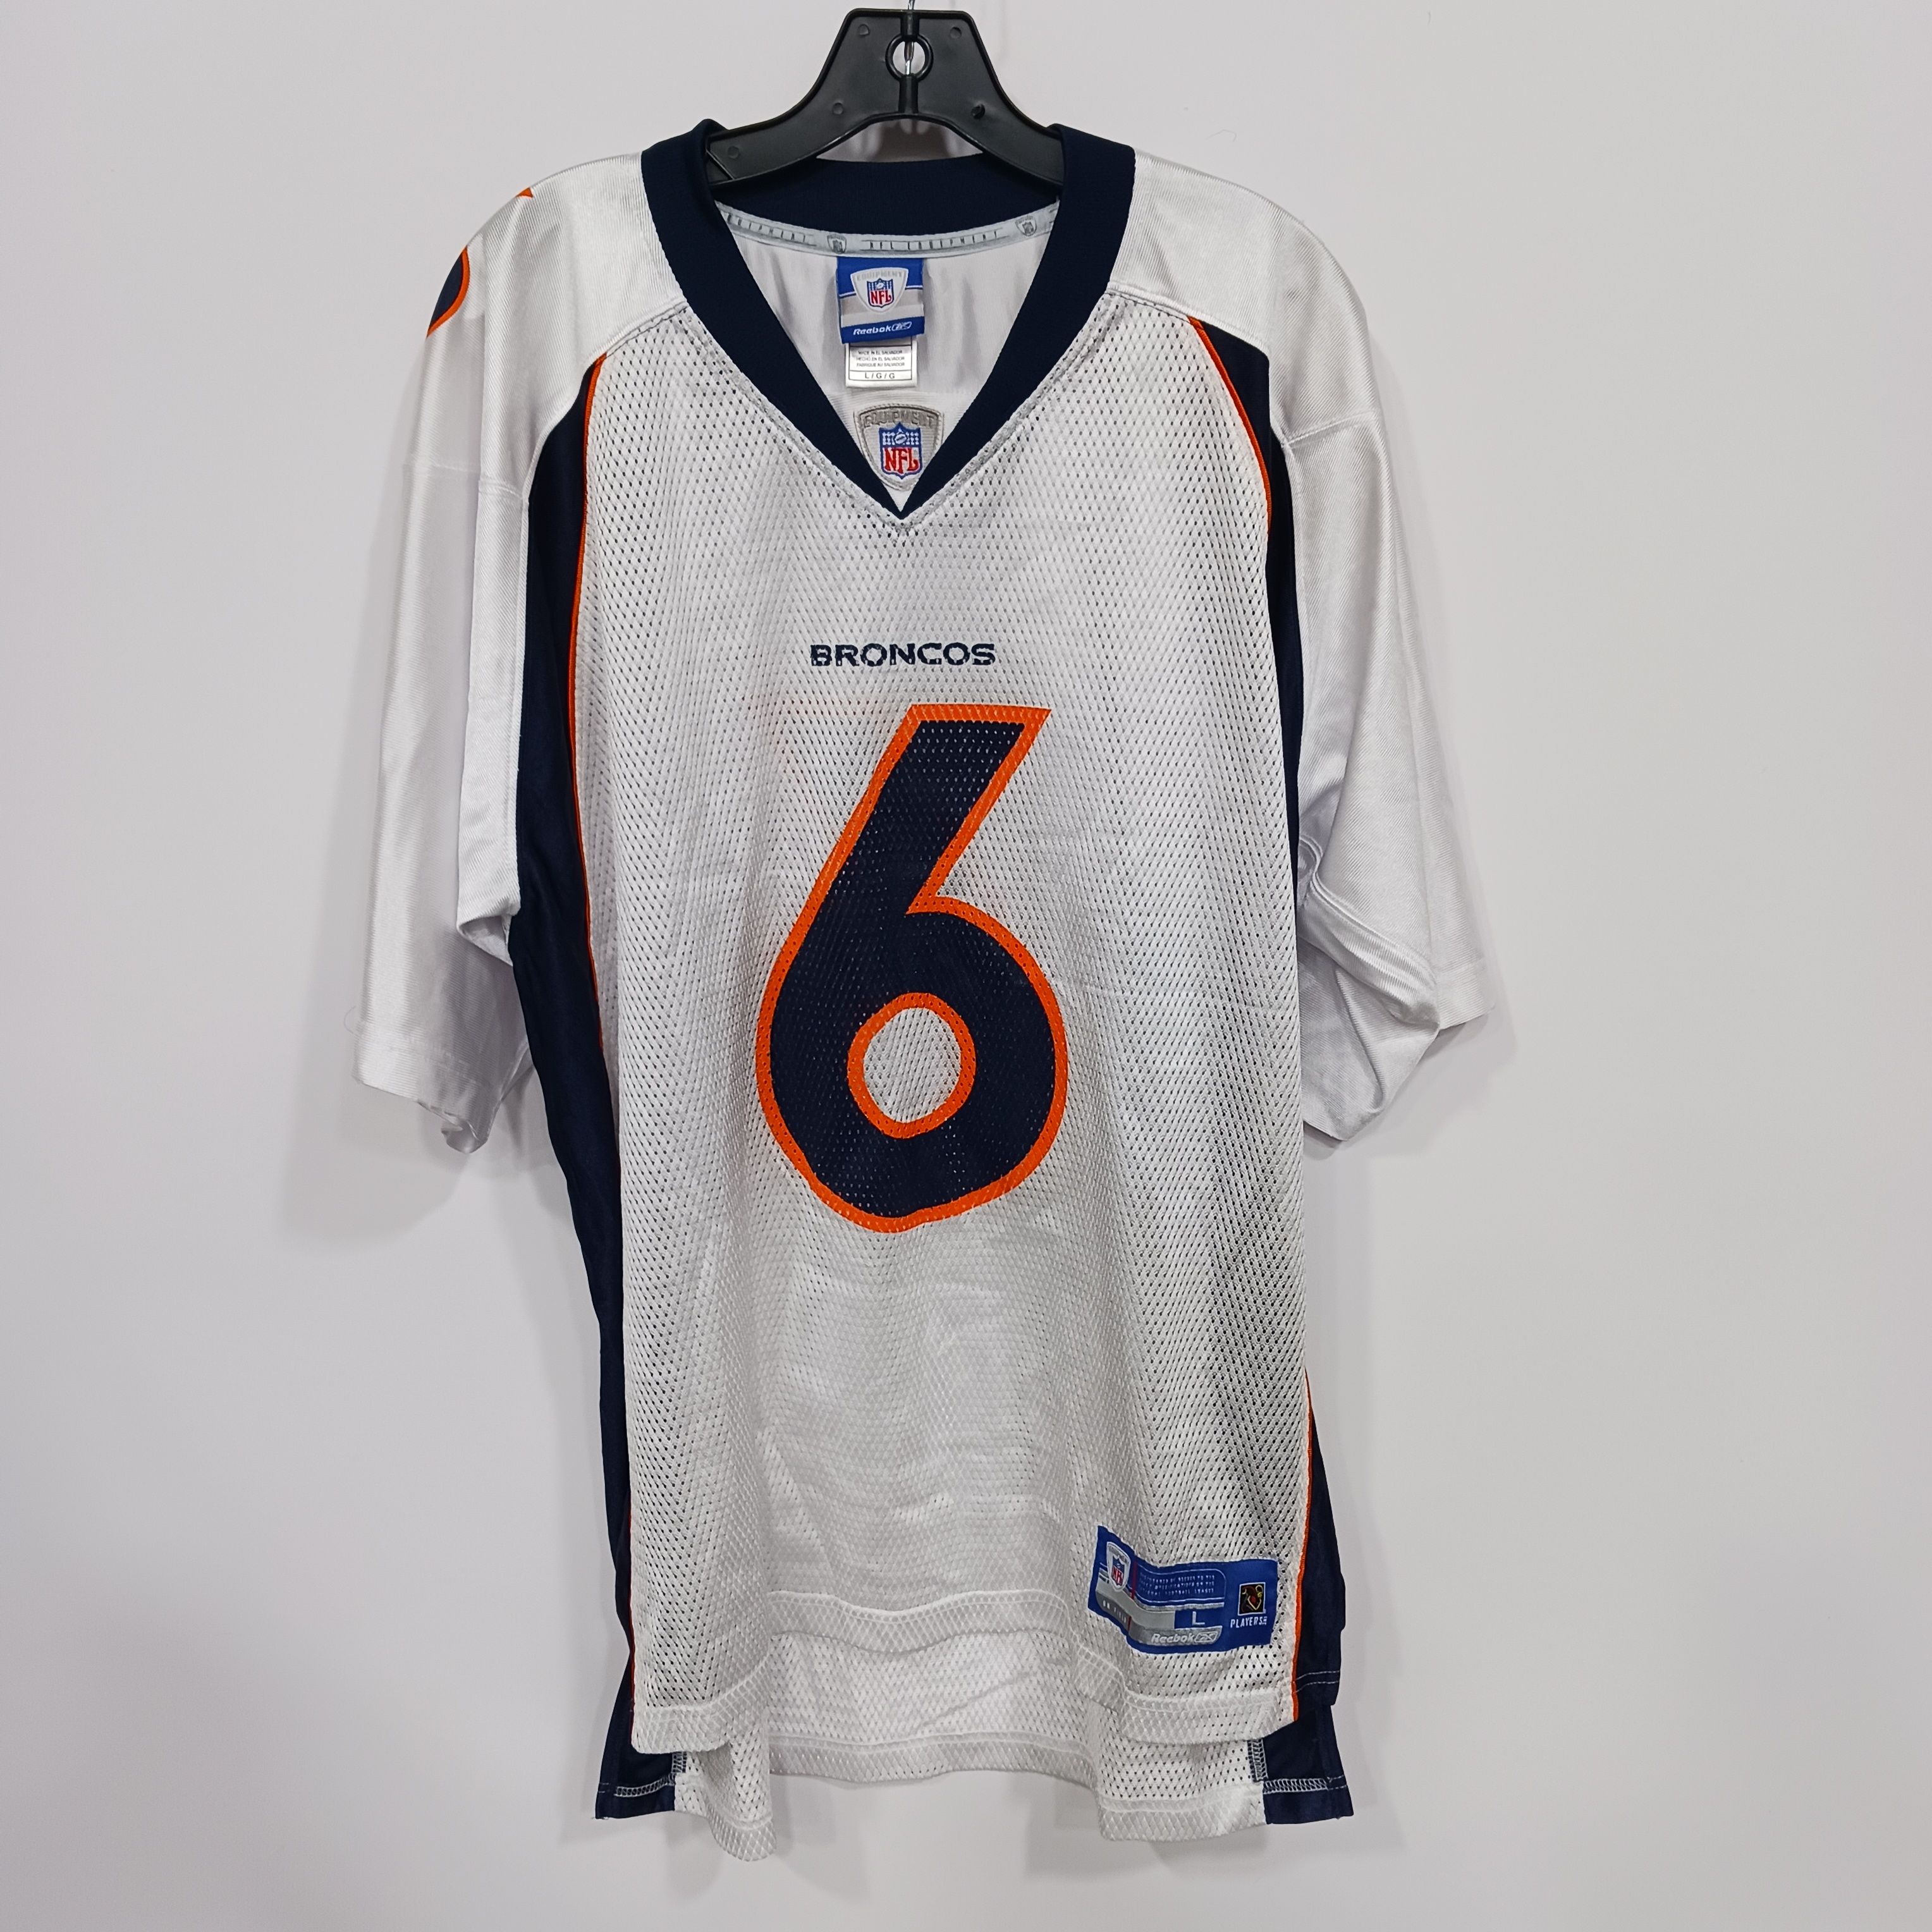 Buy the Men's NFL #6 Cutler Denver Broncos Jersey Sz L